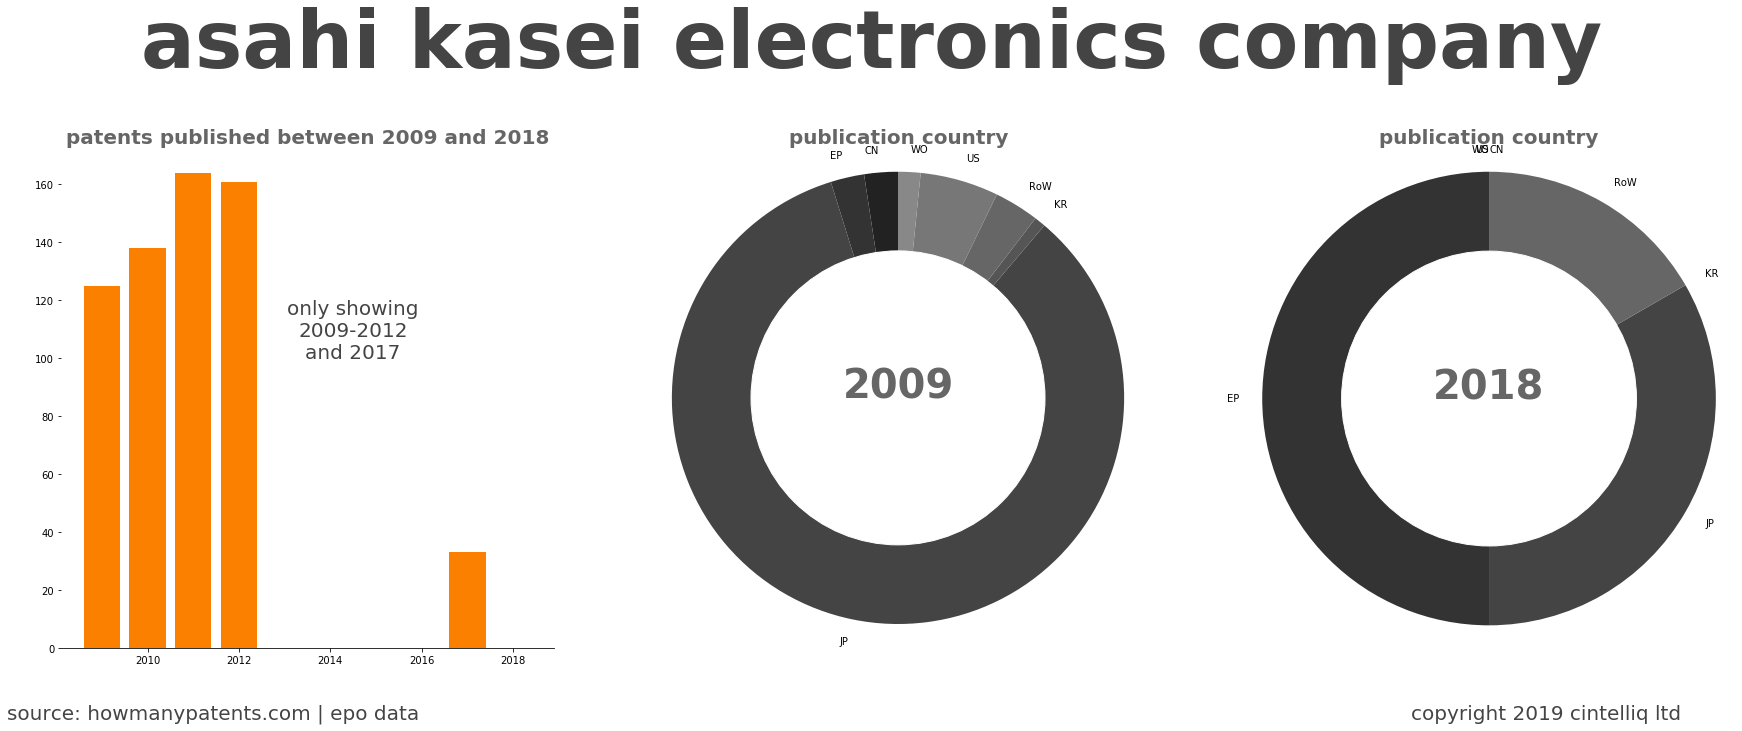 summary of patents for Asahi Kasei Electronics Company